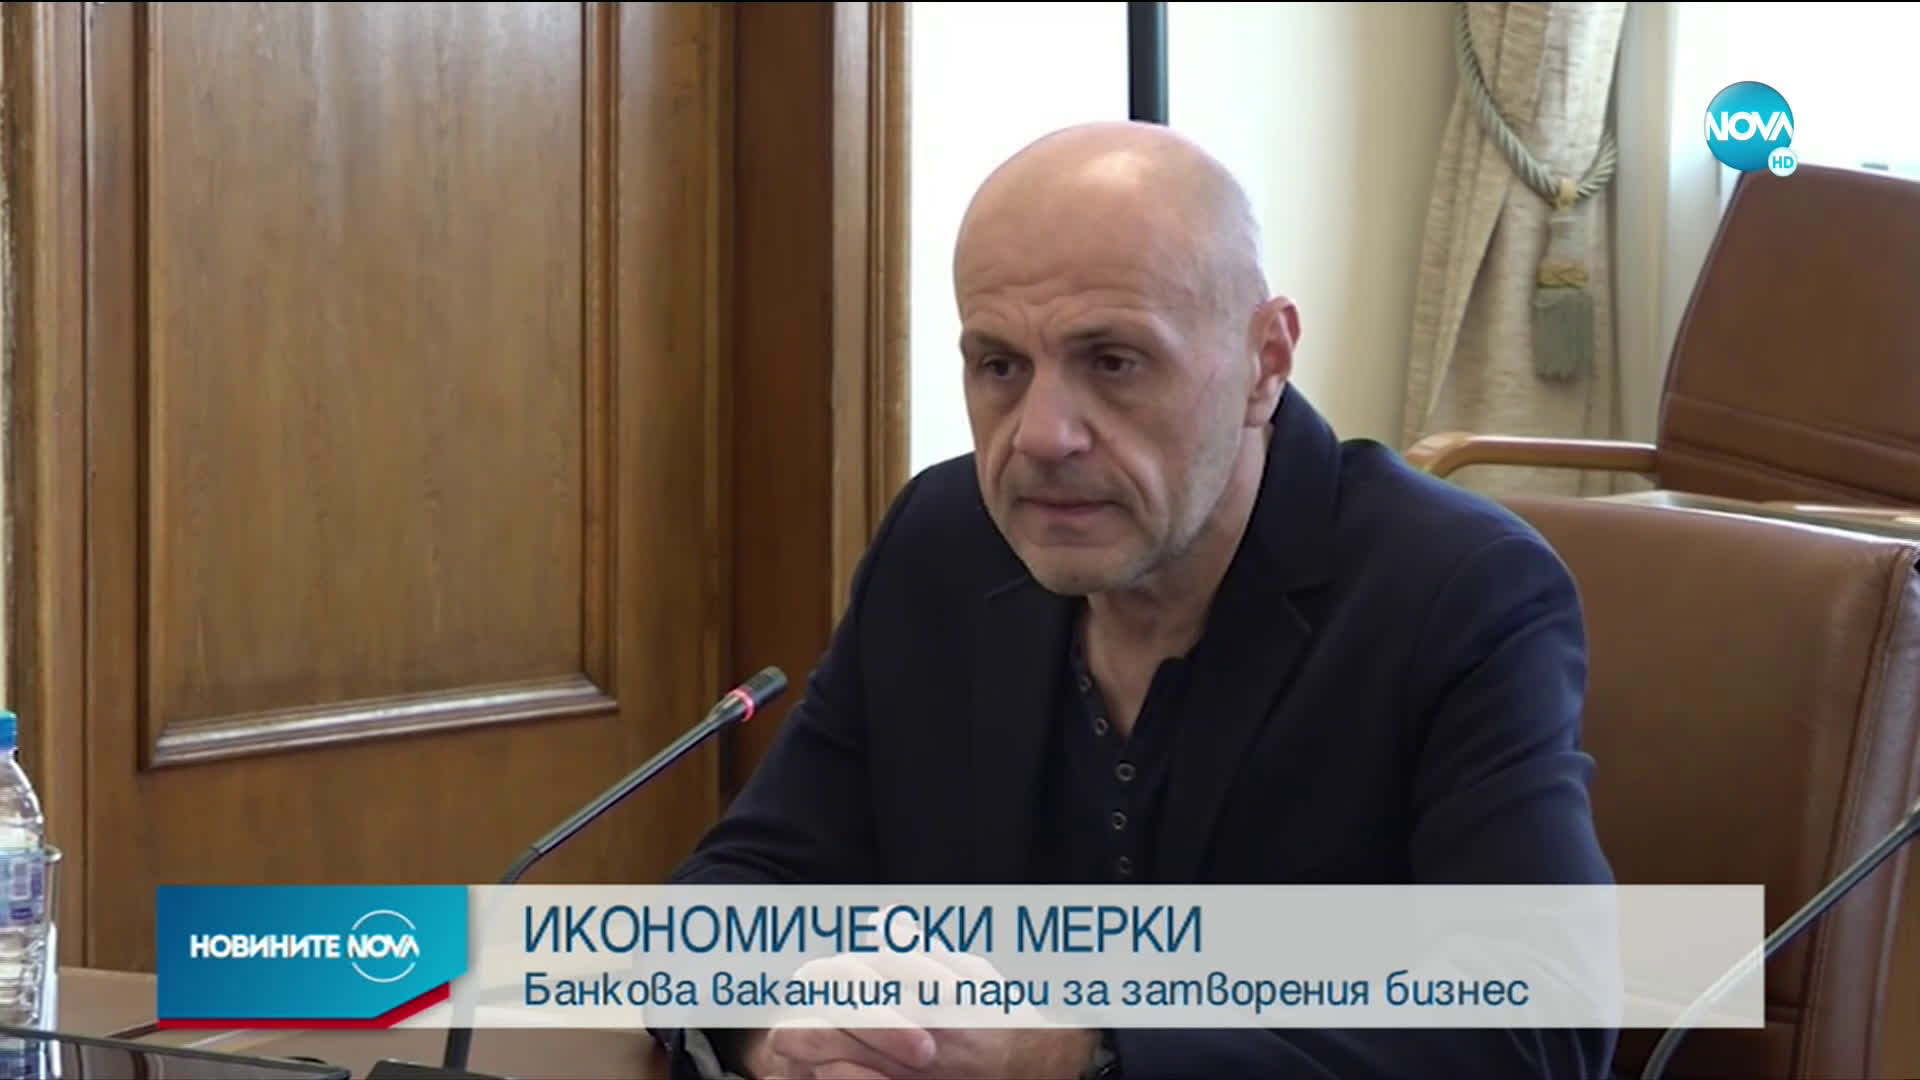 Борисов: Имаме напредък по икономическите мерки в подкрепа на бизнеса